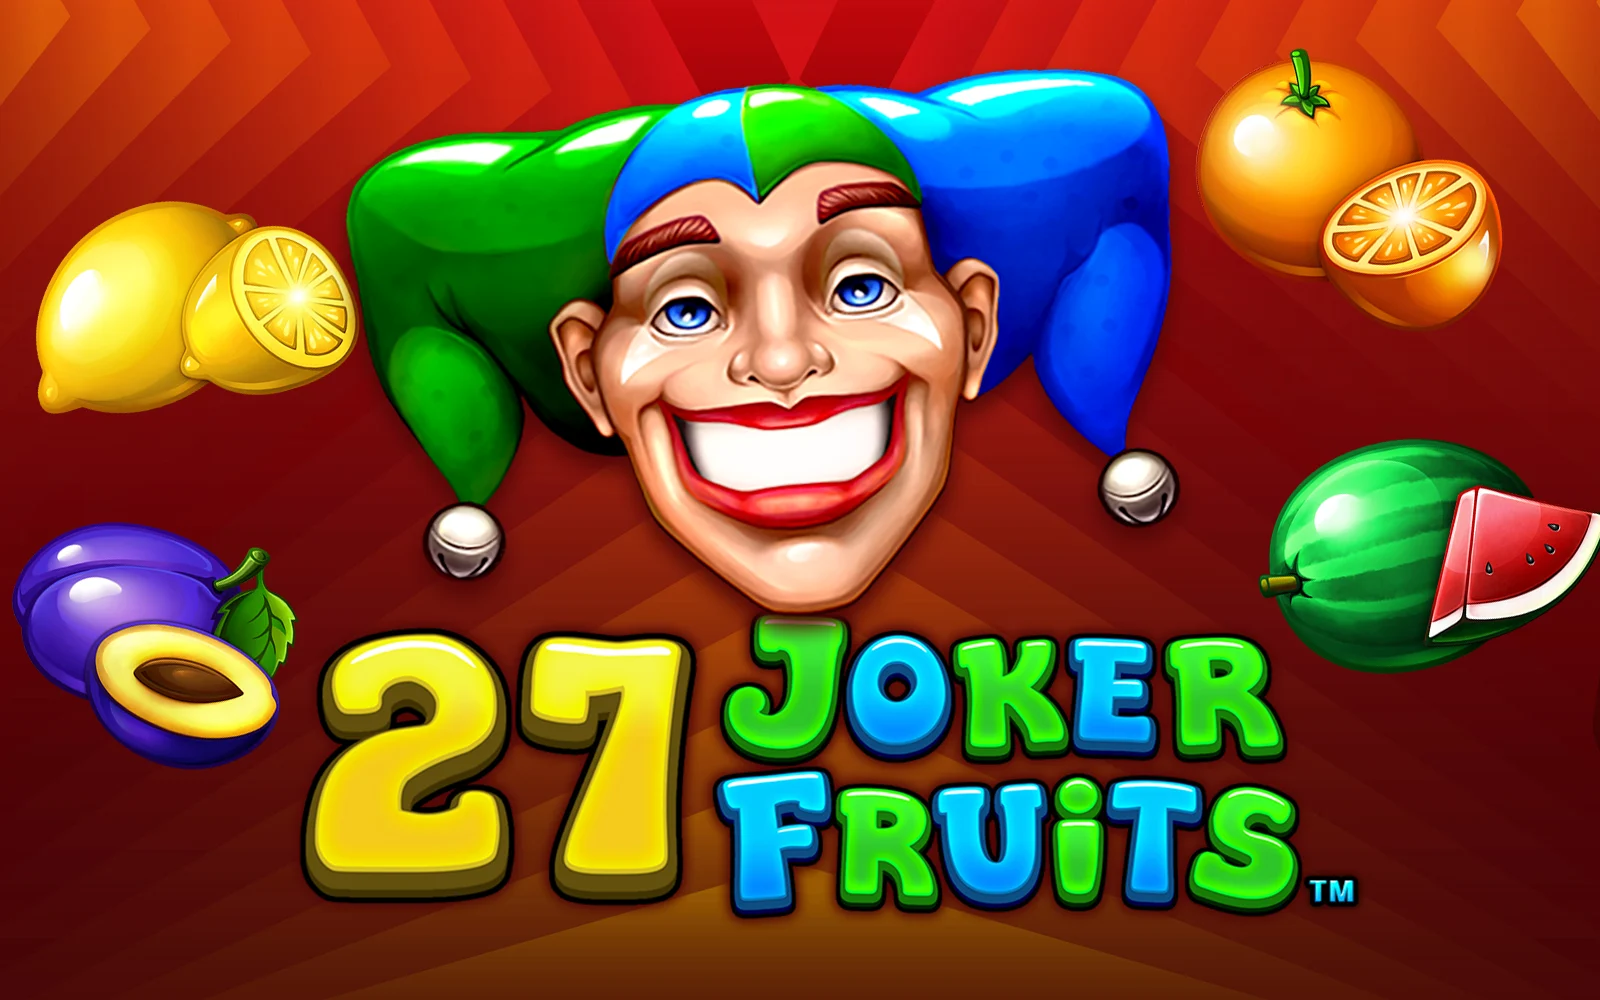 Играйте в 27 Joker Fruits в онлайн-казино Starcasino.be